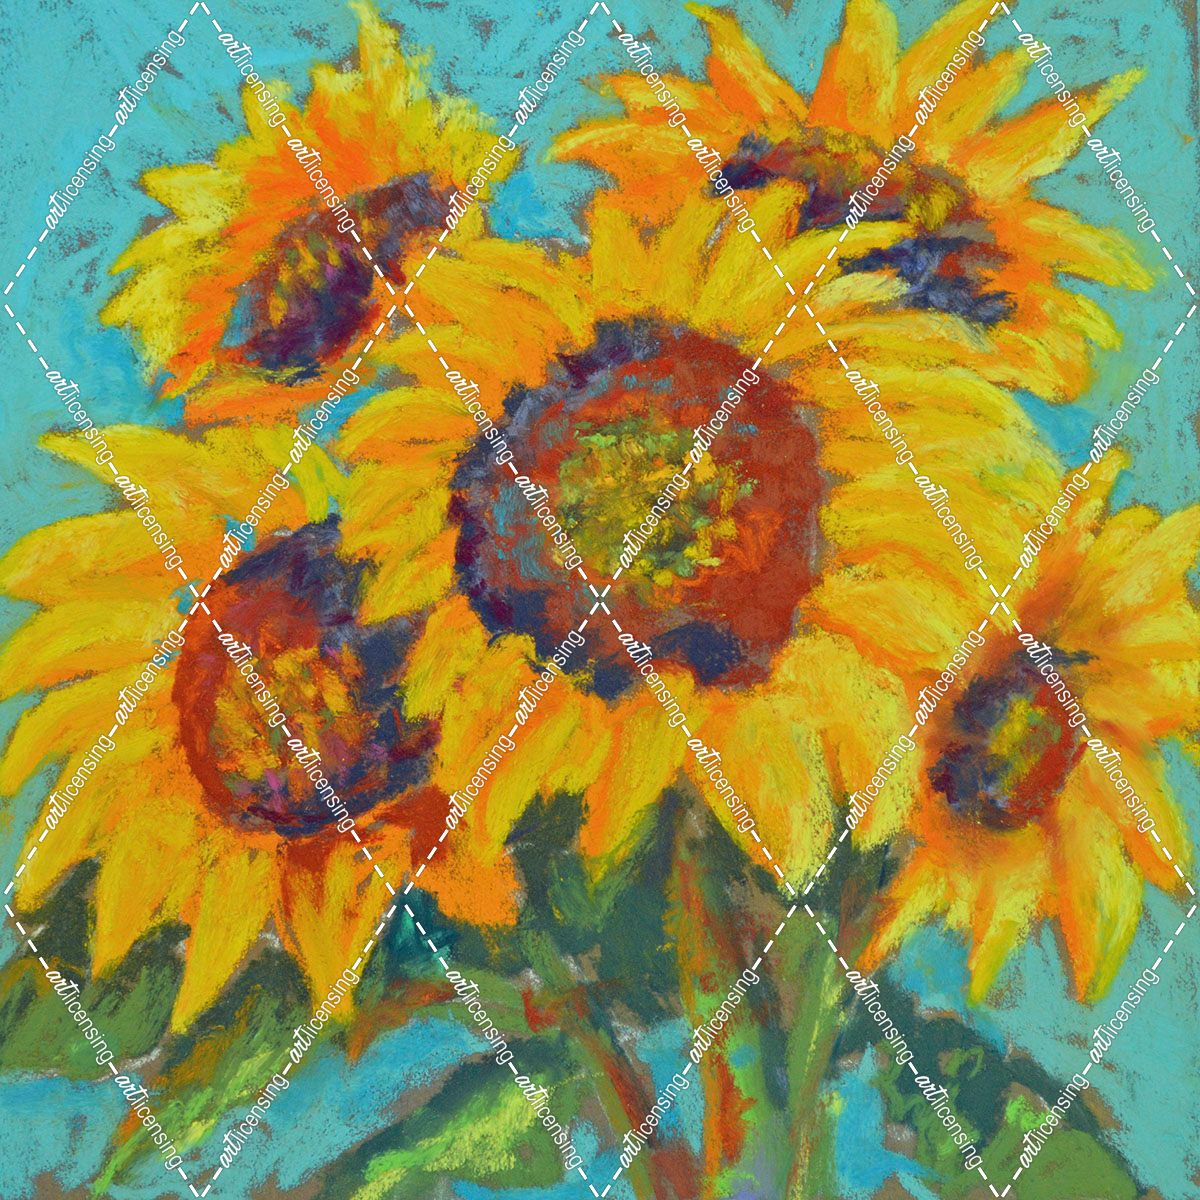 Sunflowers 2